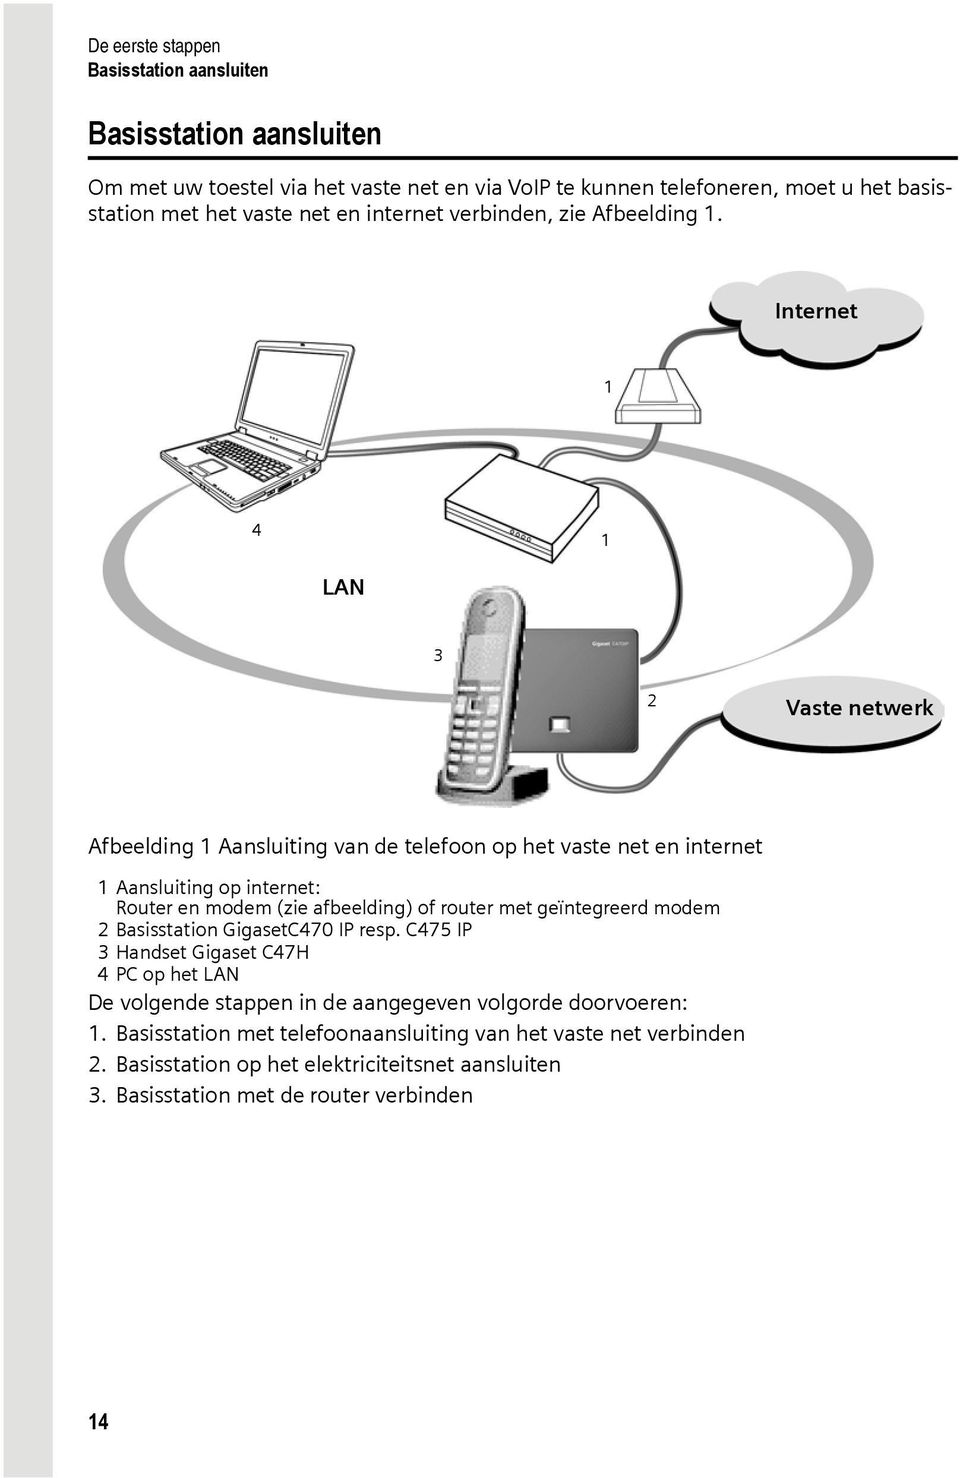 Internet 1 4 1 LAN 3 2 Vaste netwerk Afbeelding 1 Aansluiting van de telefoon op het vaste net en internet 1 Aansluiting op internet: Router en modem (zie afbeelding) of router met